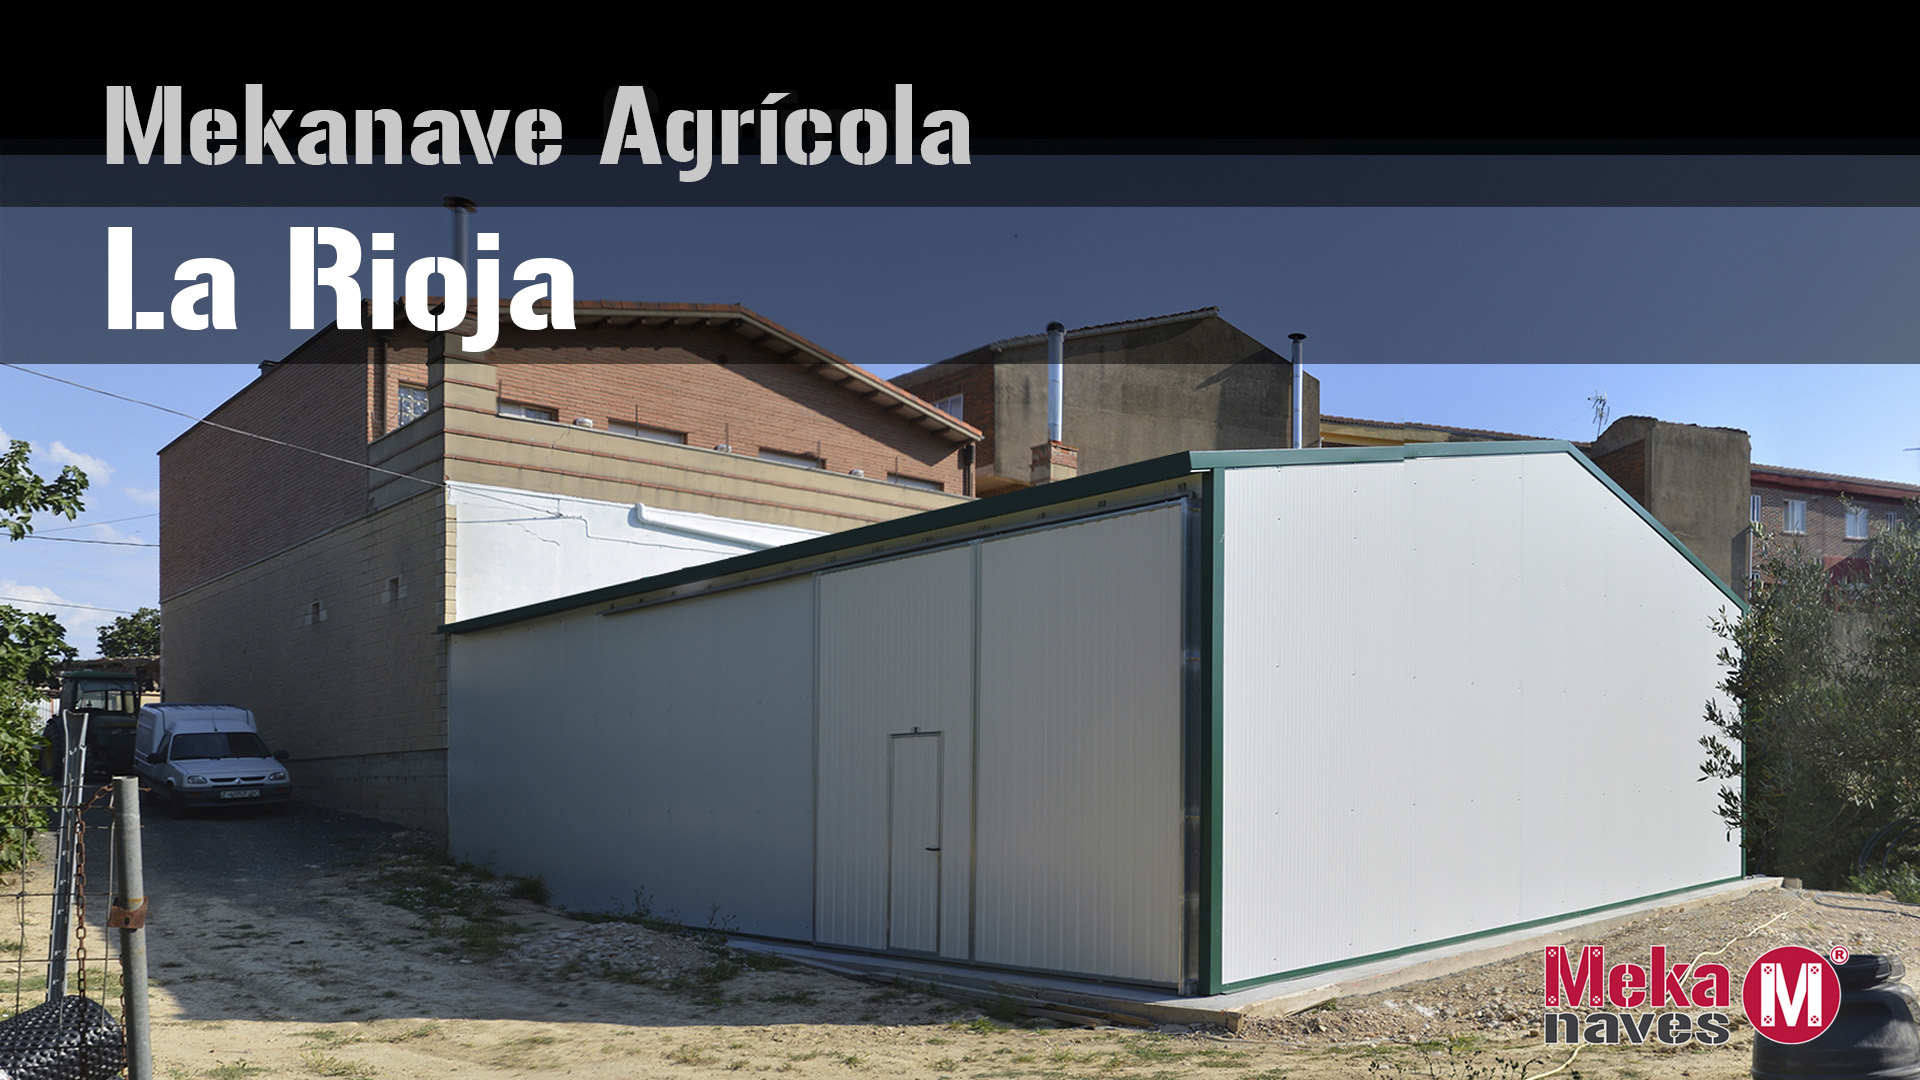 Galeria fotos nave agricola en La Rioja